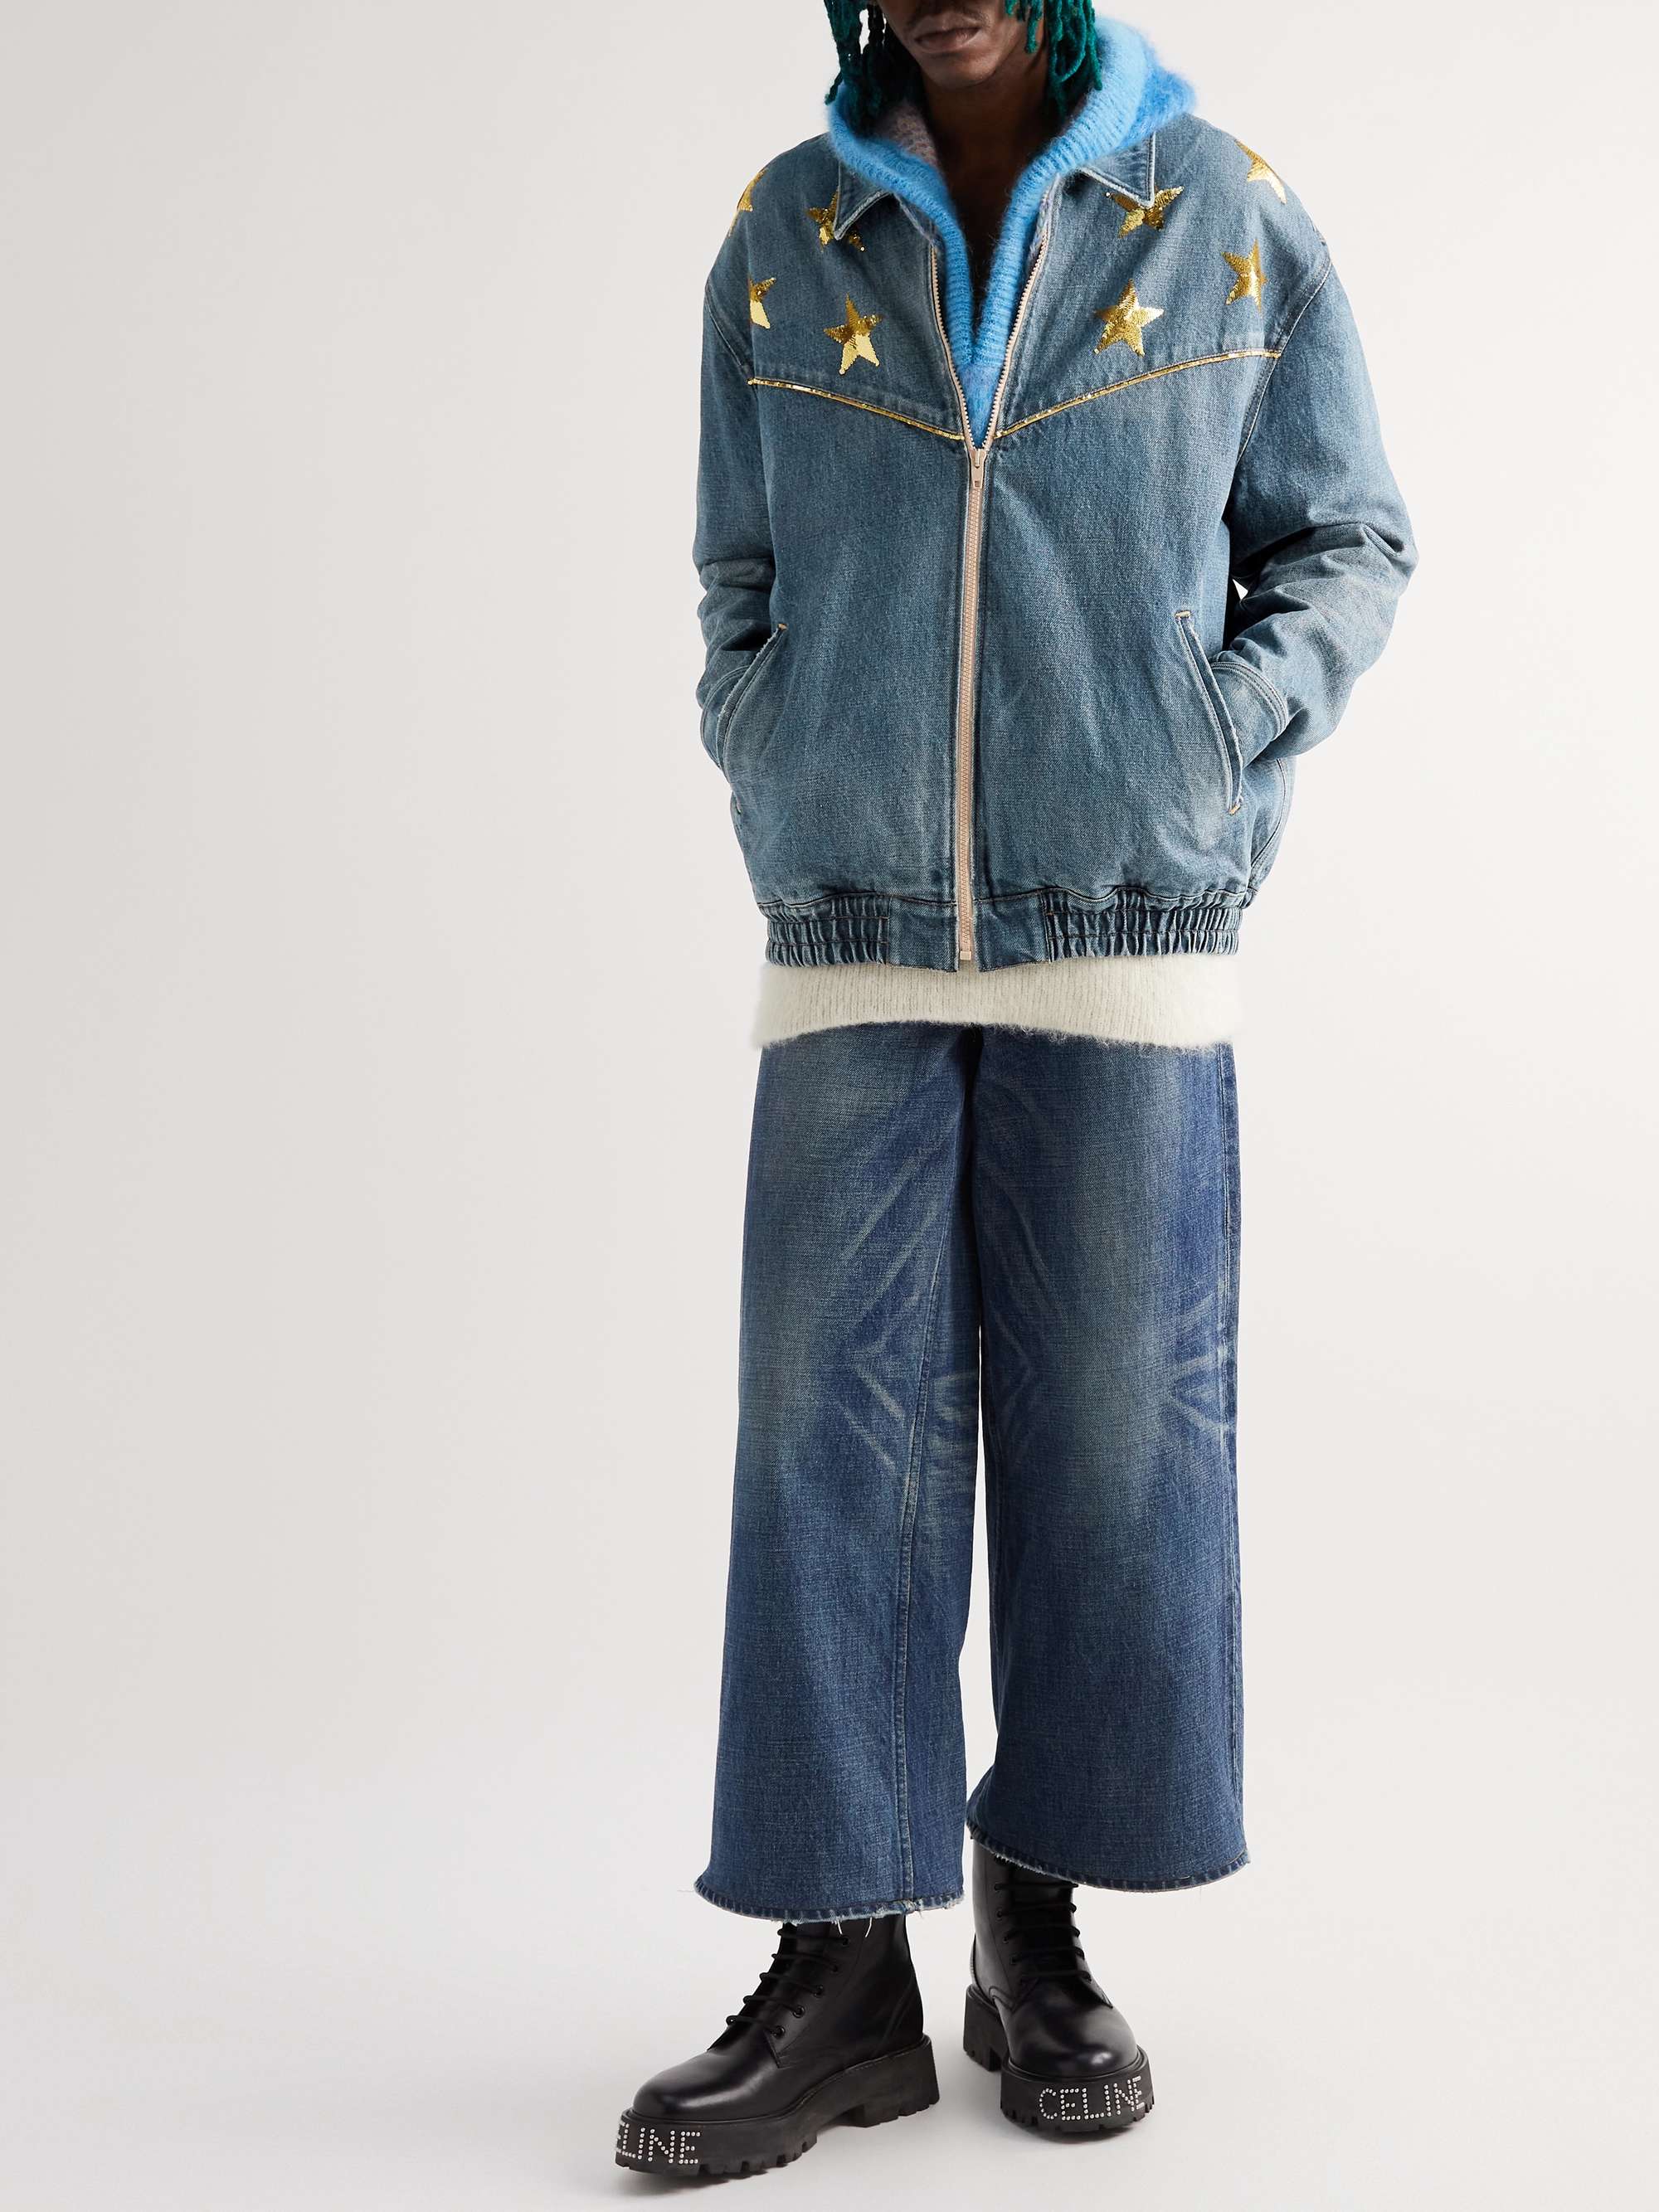 Blue Sequin-Embellished Denim Blouson Jacket | CELINE HOMME | MR PORTER